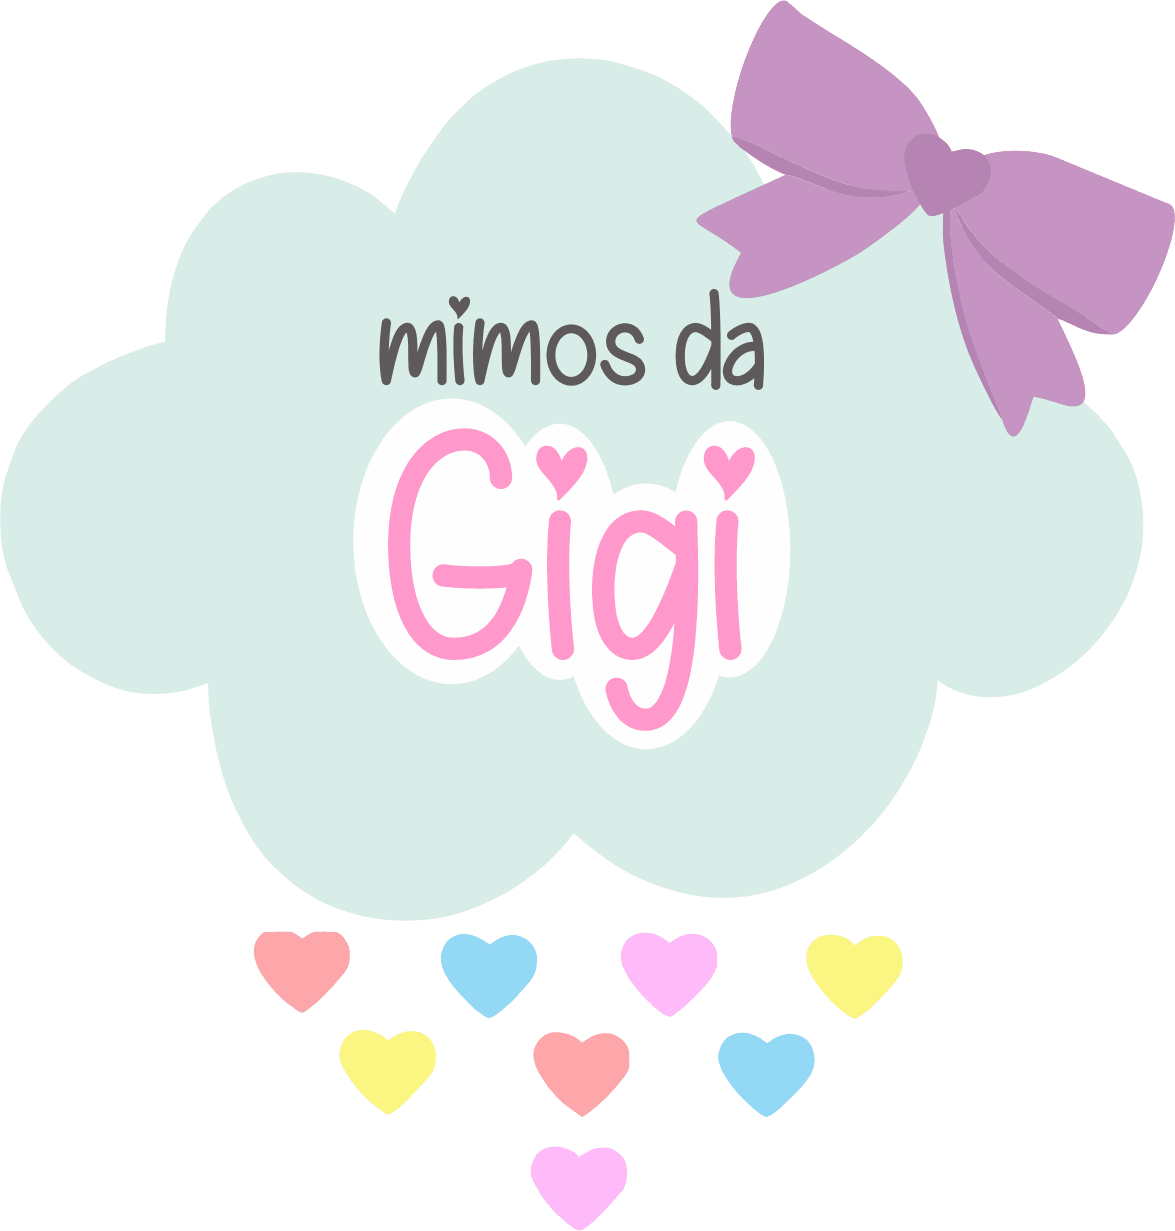 Mimos da Gigi